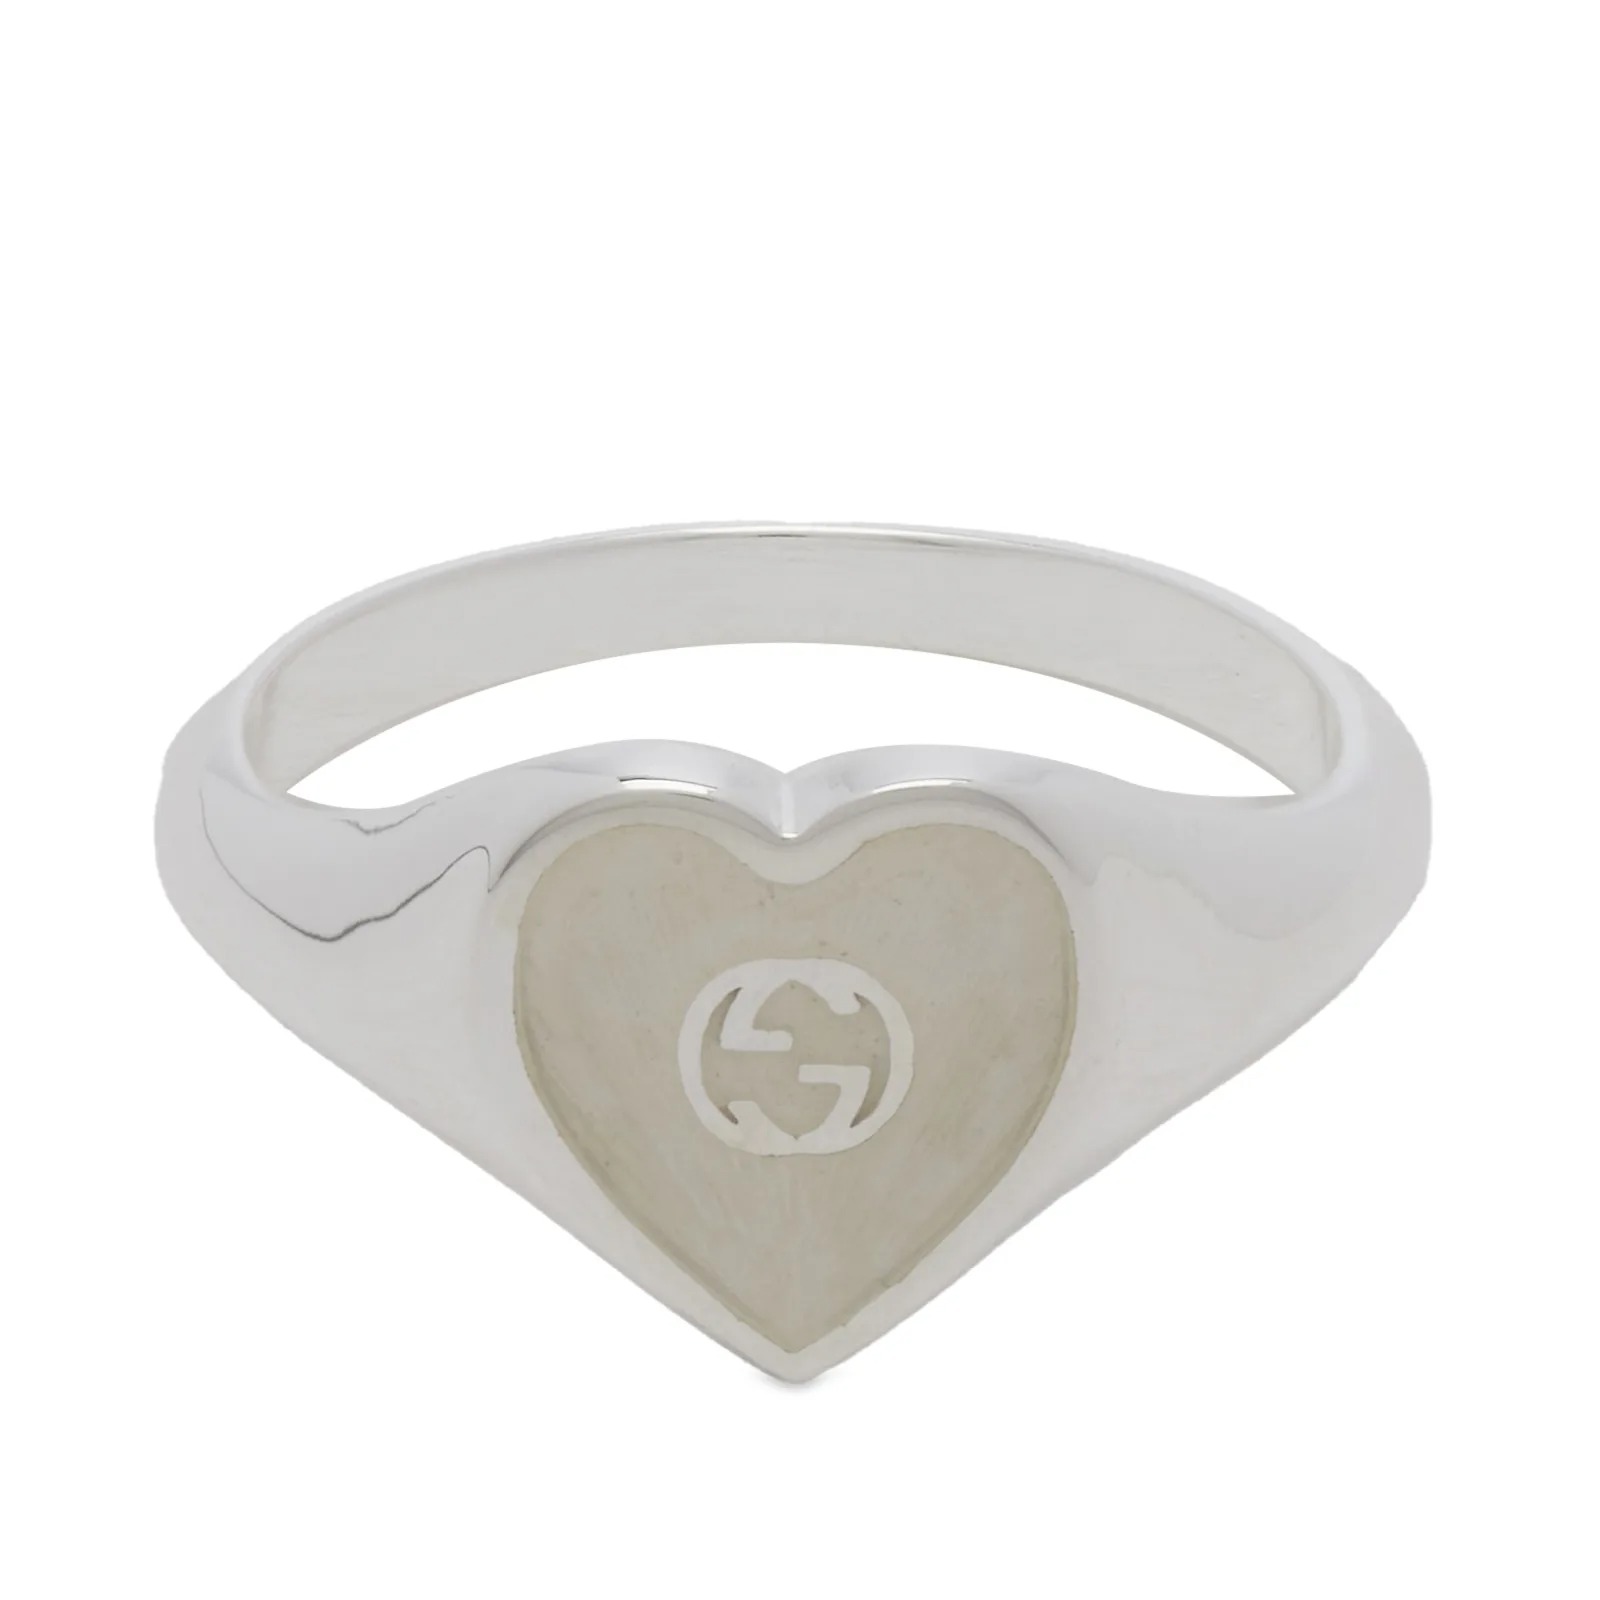 Кольцо Gucci Jewellery Heart Enamel, серебрянный